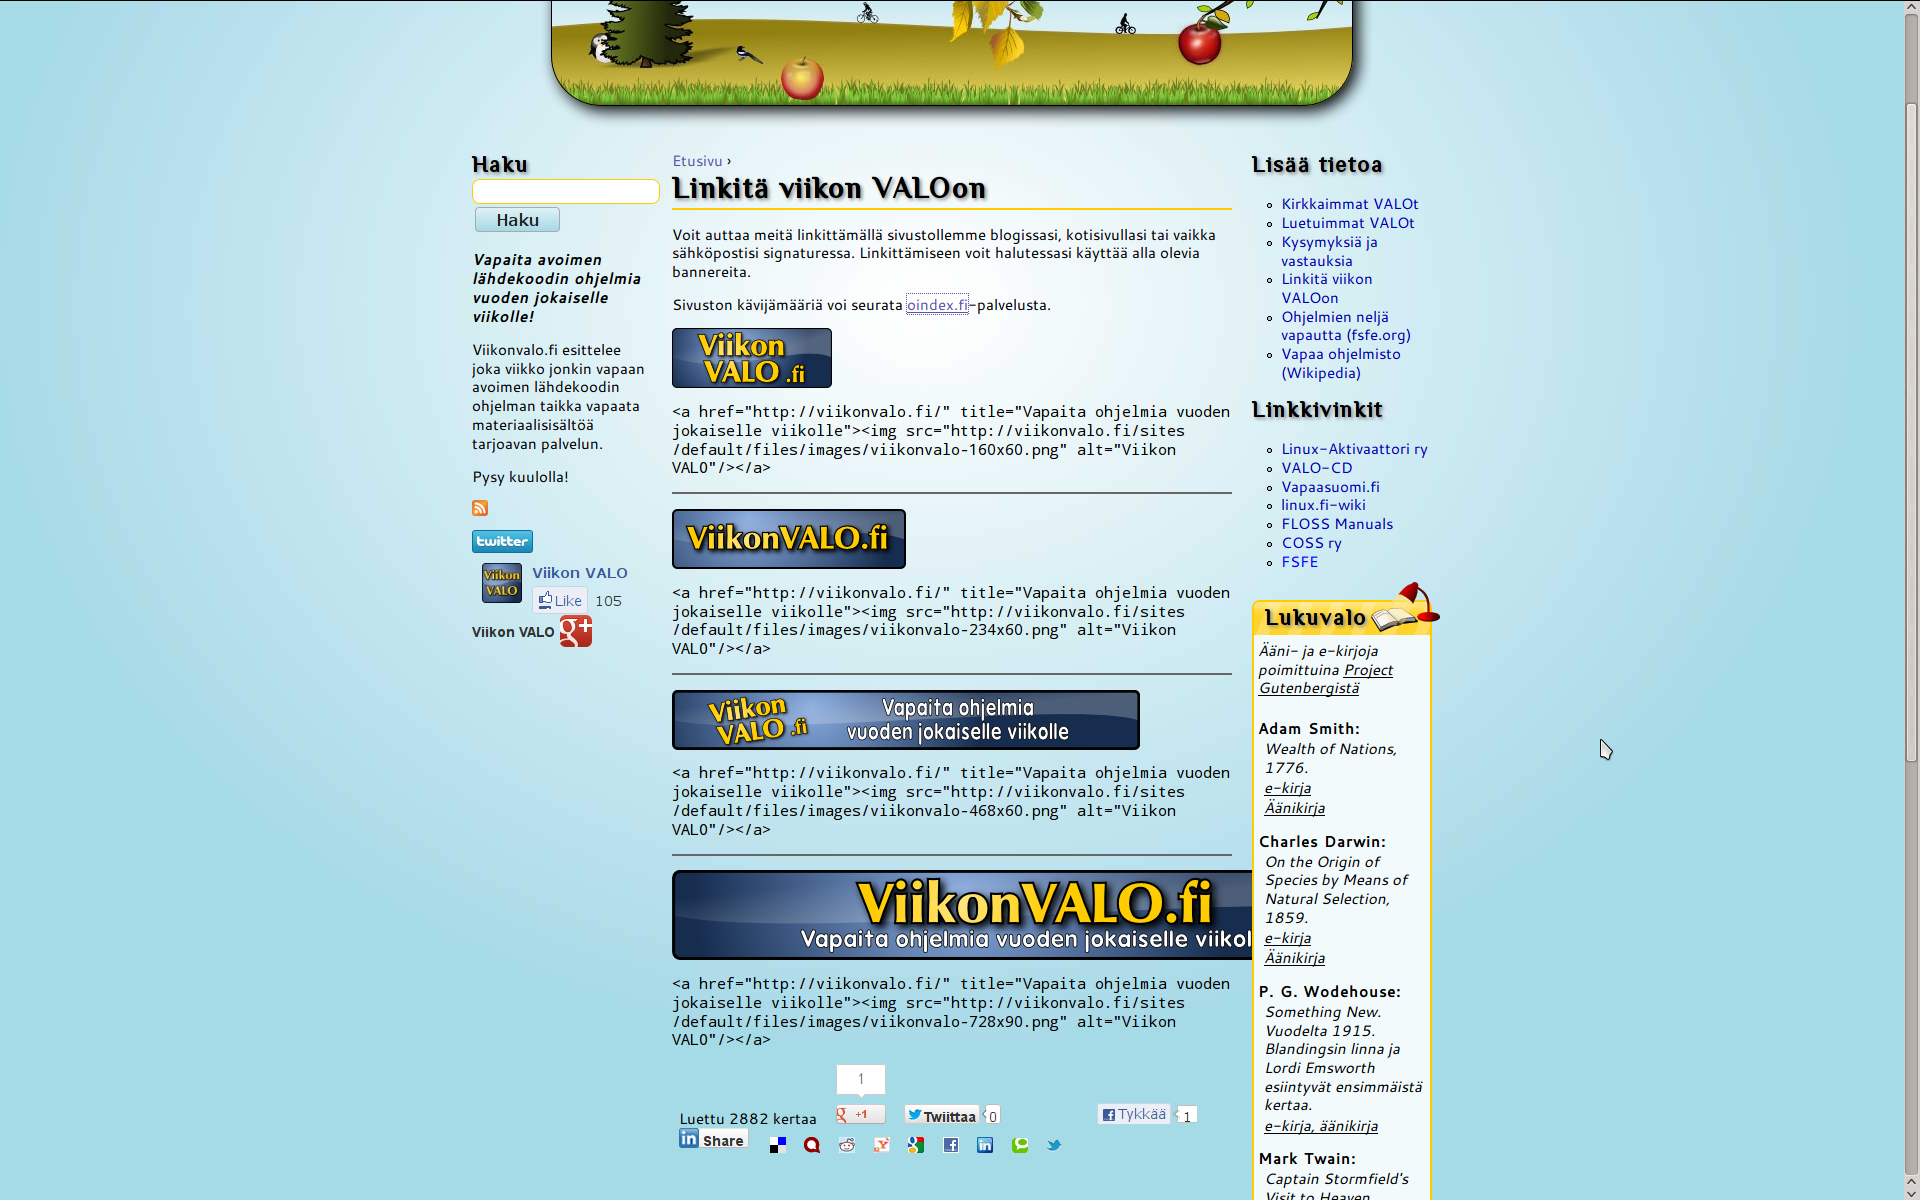 galleryimage:Viikon VALOa voi mainostaa laittamalla omalleweb-sivulleen Viikon VALO -sivustolle linkittävän bannerin, joitalöytyyerikokoisina.